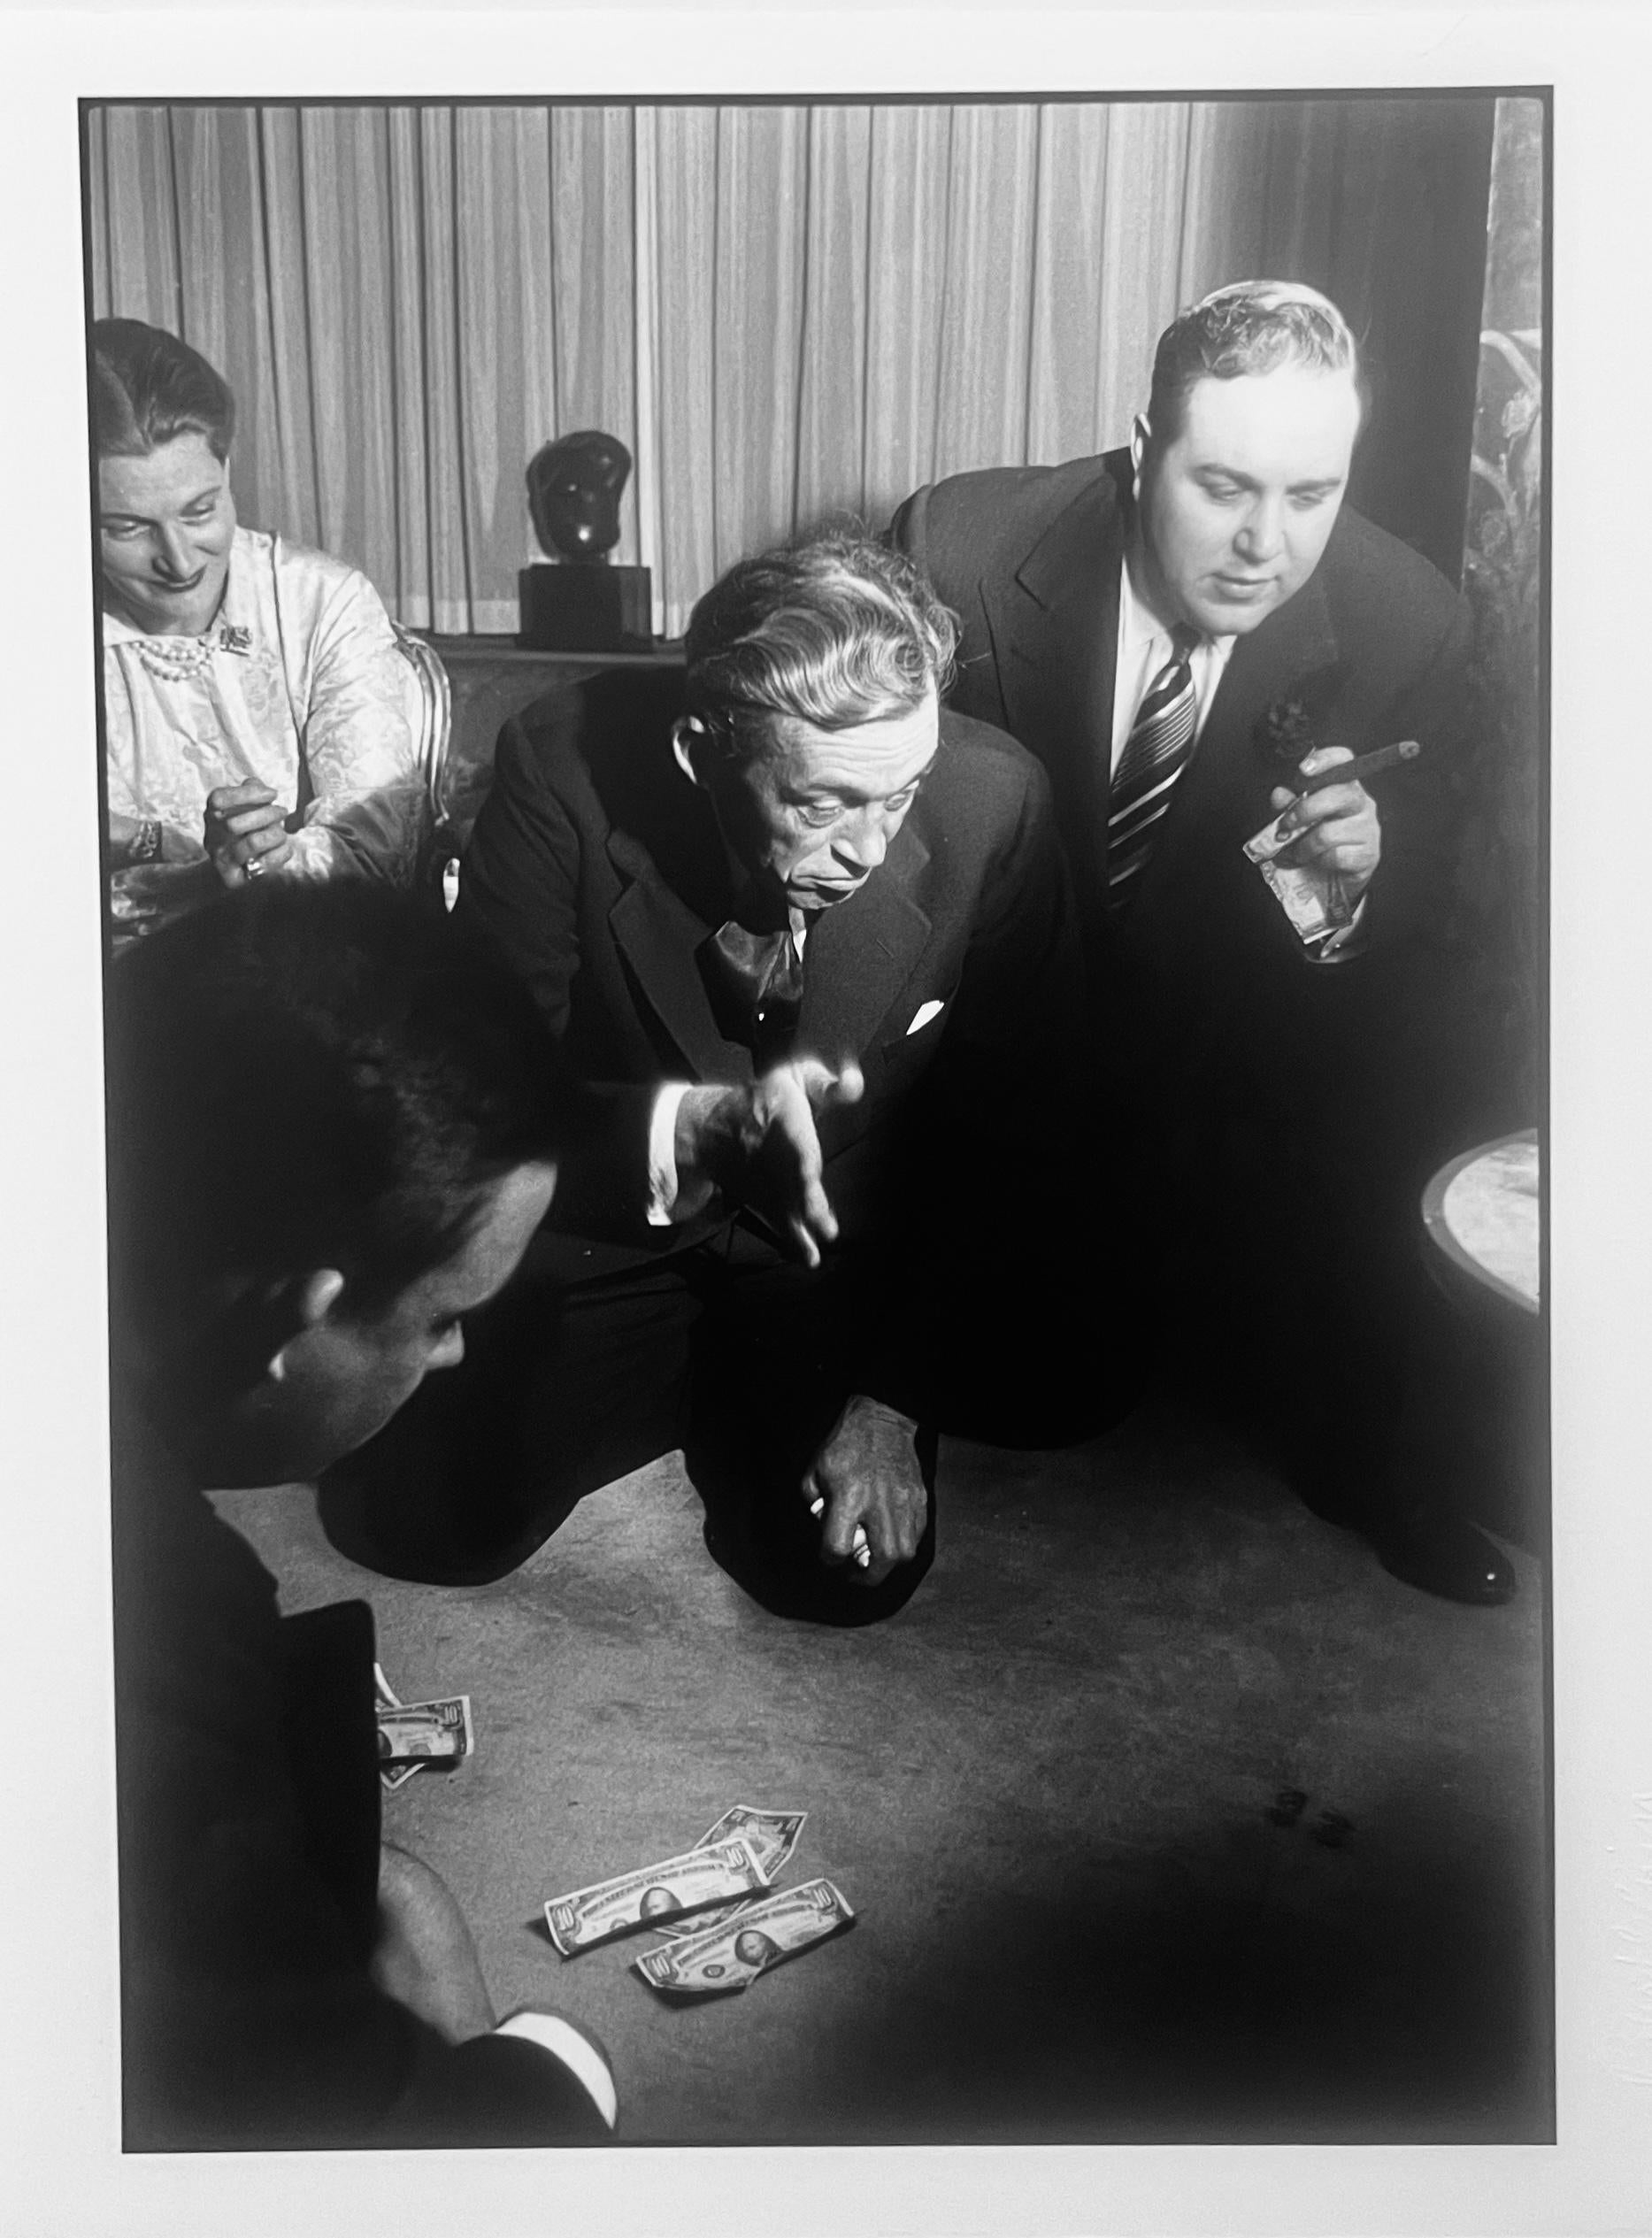 Burt Glinn Black and White Photograph – John Huston, Schwarz-Weiß-Fotografie der 1950er Jahre, Filmregisseur bei den Misfits